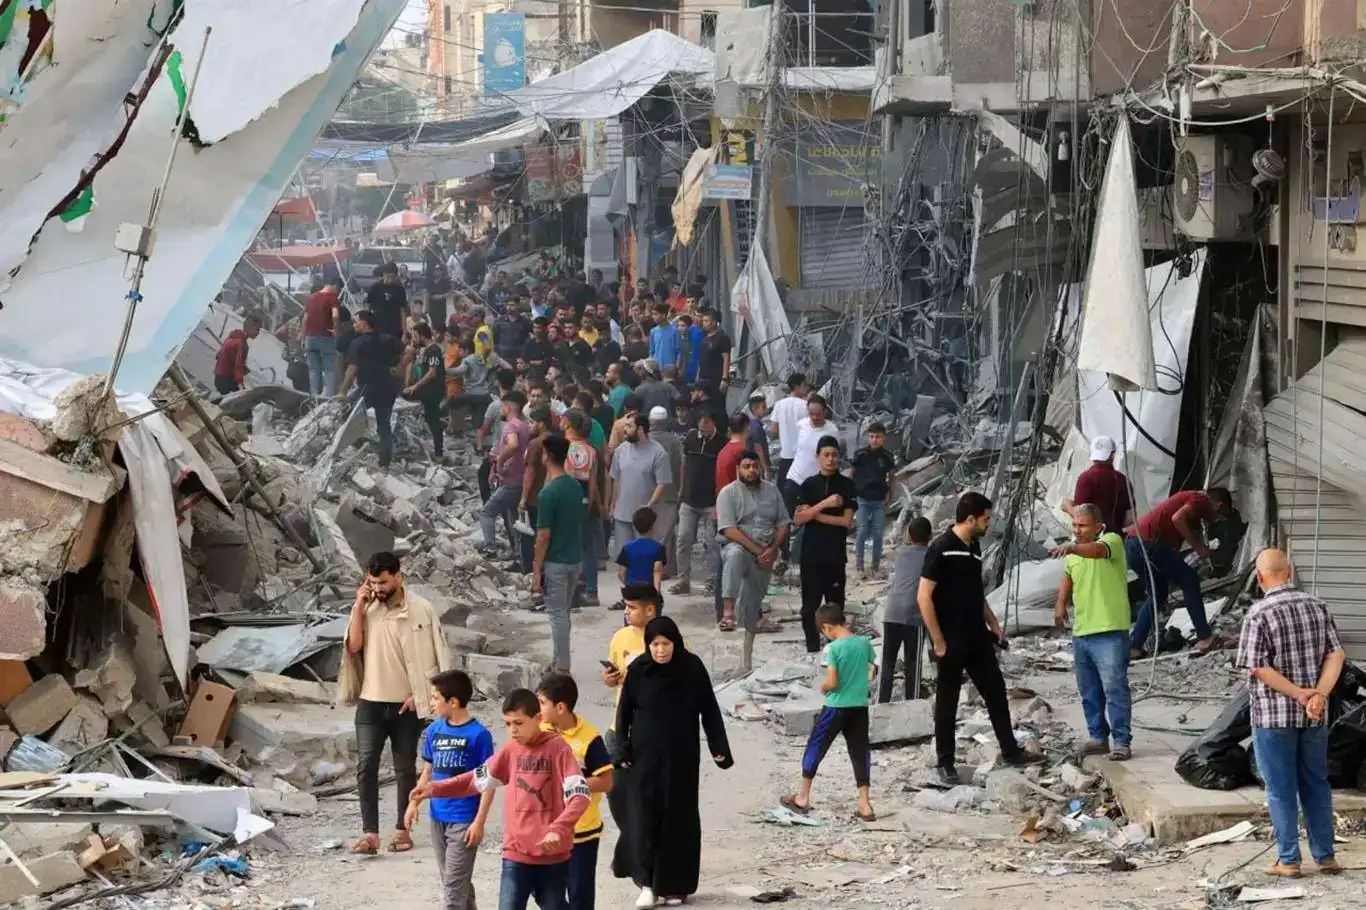 BM: Gazze'nin kuzeyinde yardımların yüzde 41'i engellendi